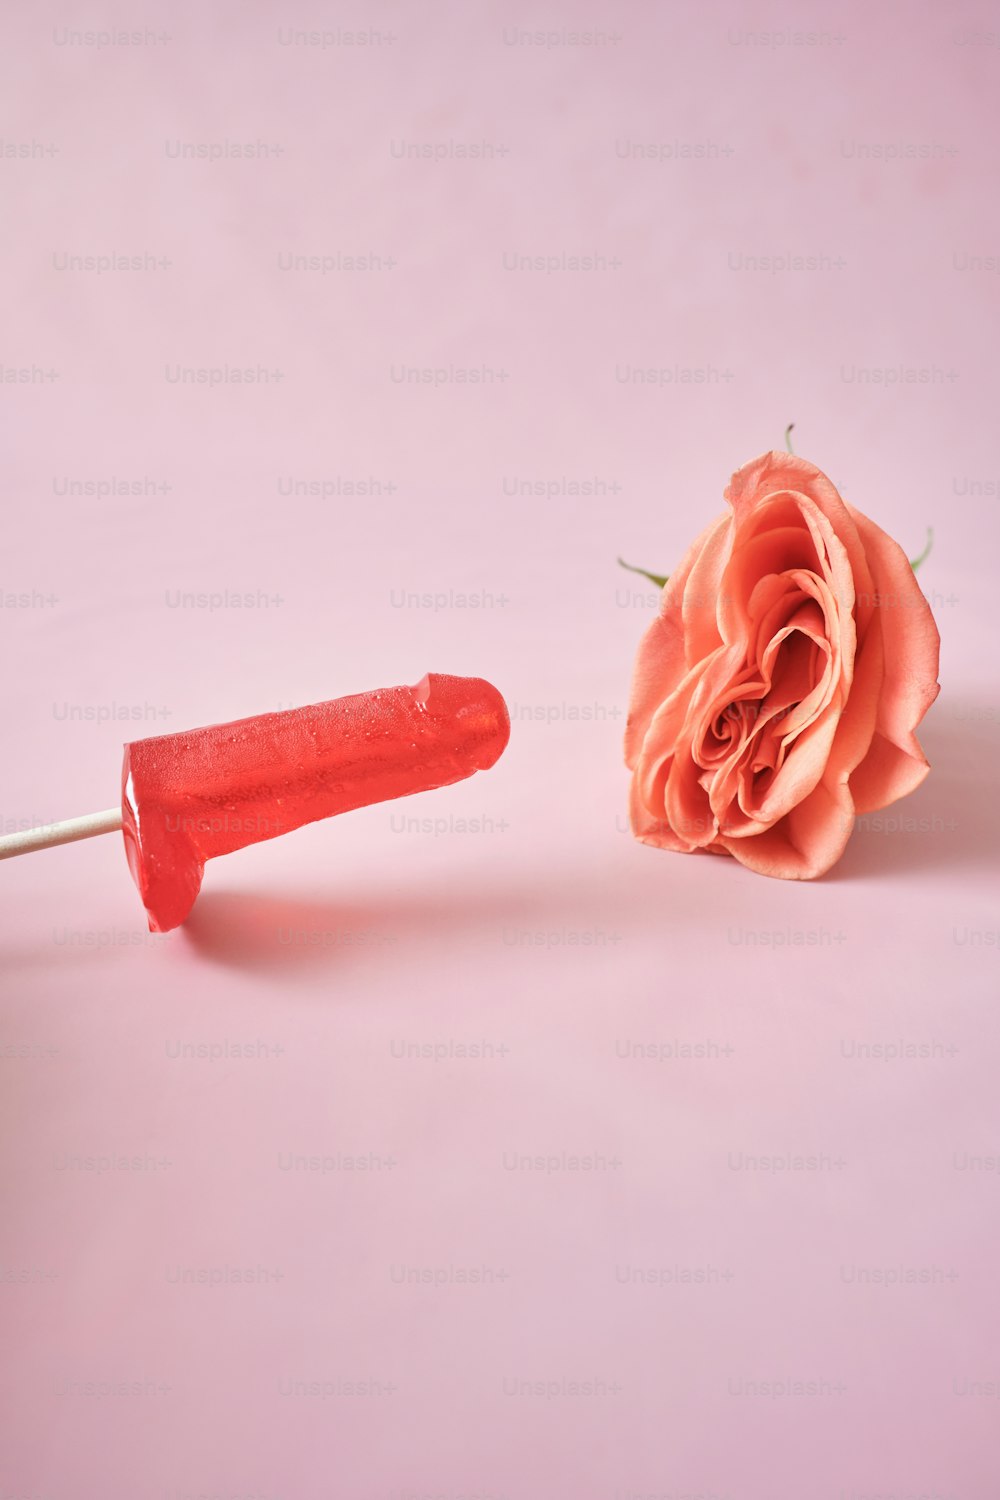 una rosa rosa y un objeto de plástico rojo sobre un fondo rosa